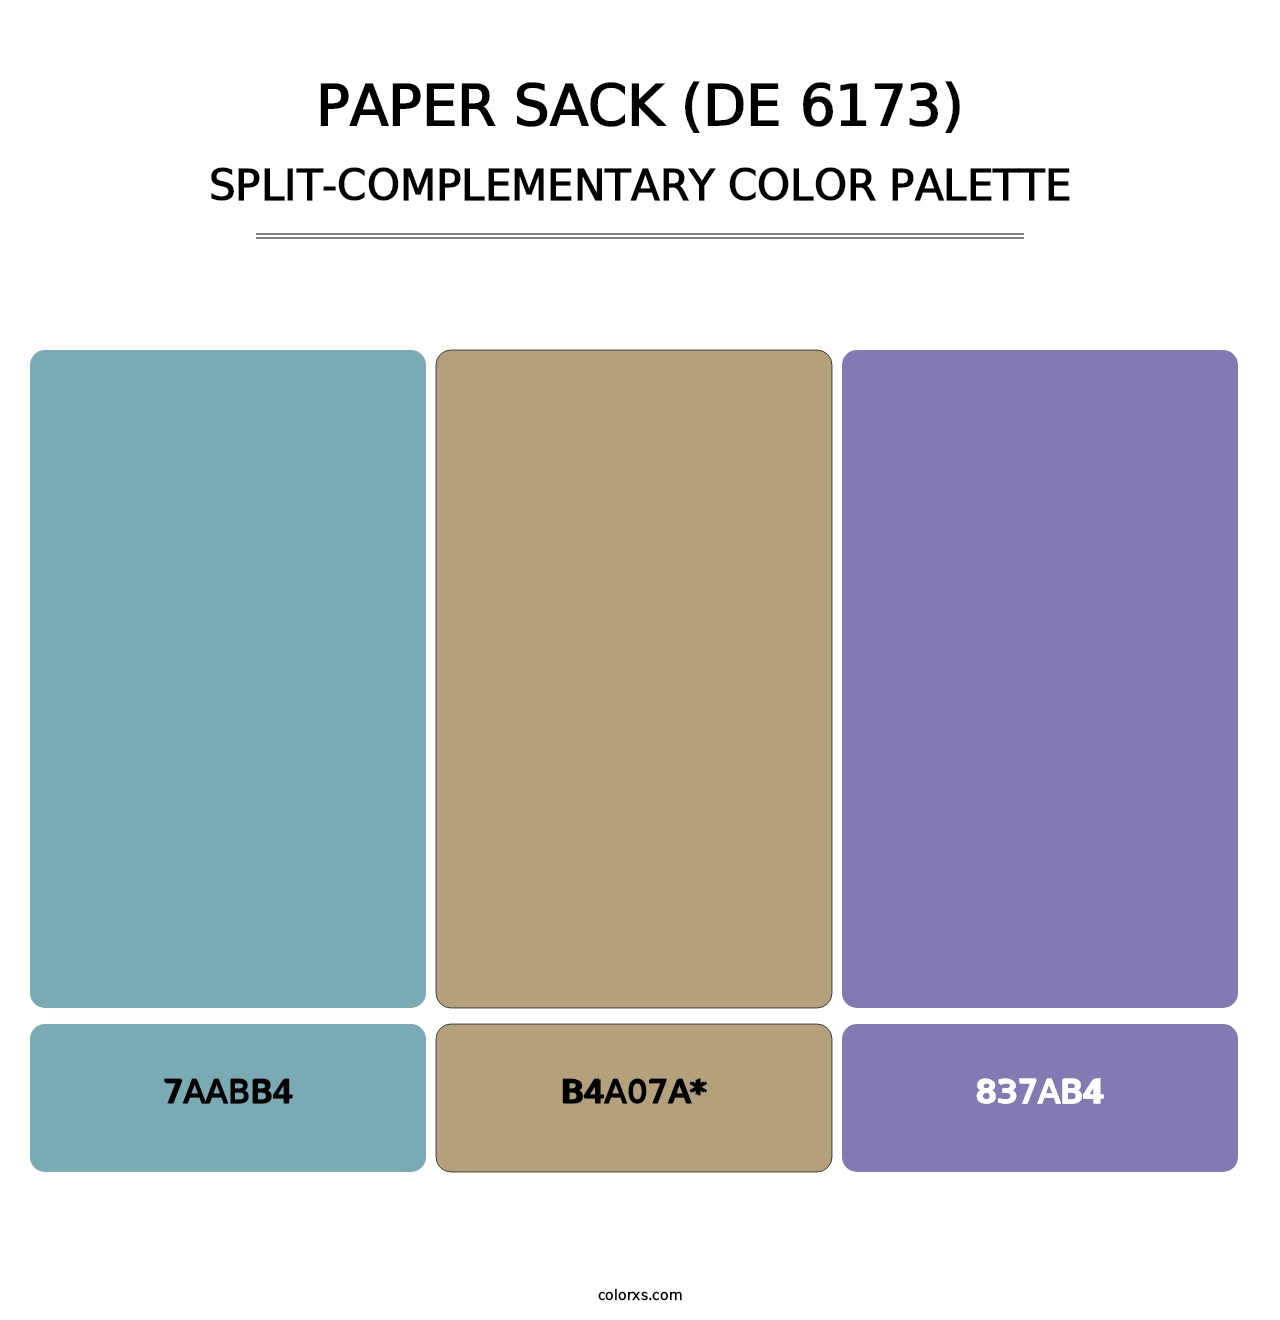 Paper Sack (DE 6173) - Split-Complementary Color Palette